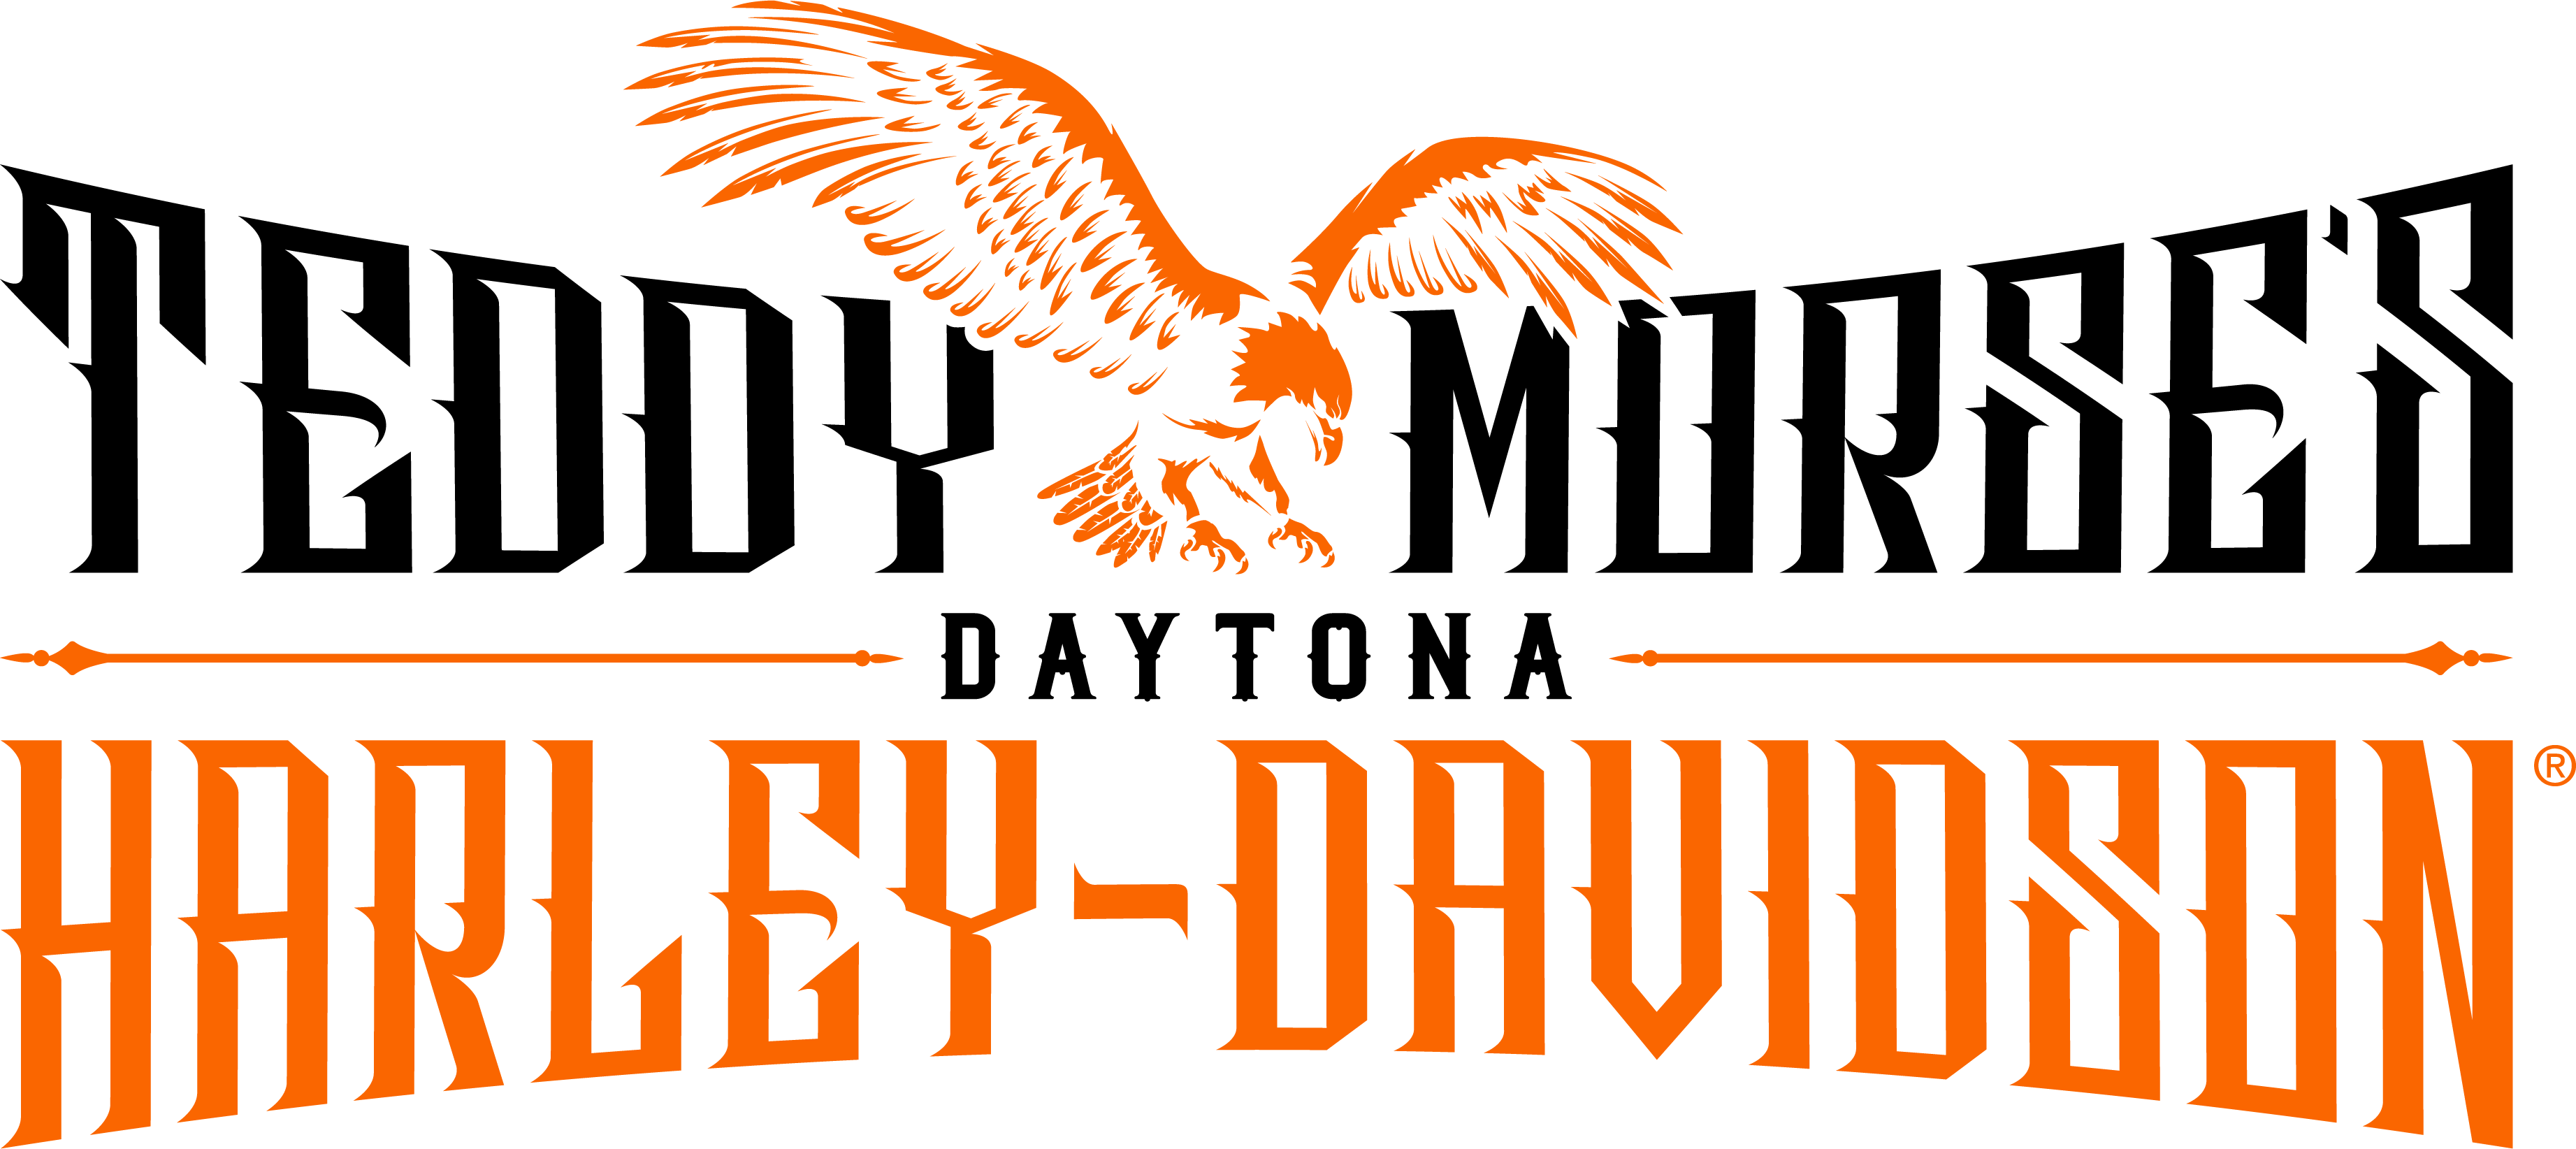 Teddy Morse's Daytona Harley-Davidson®